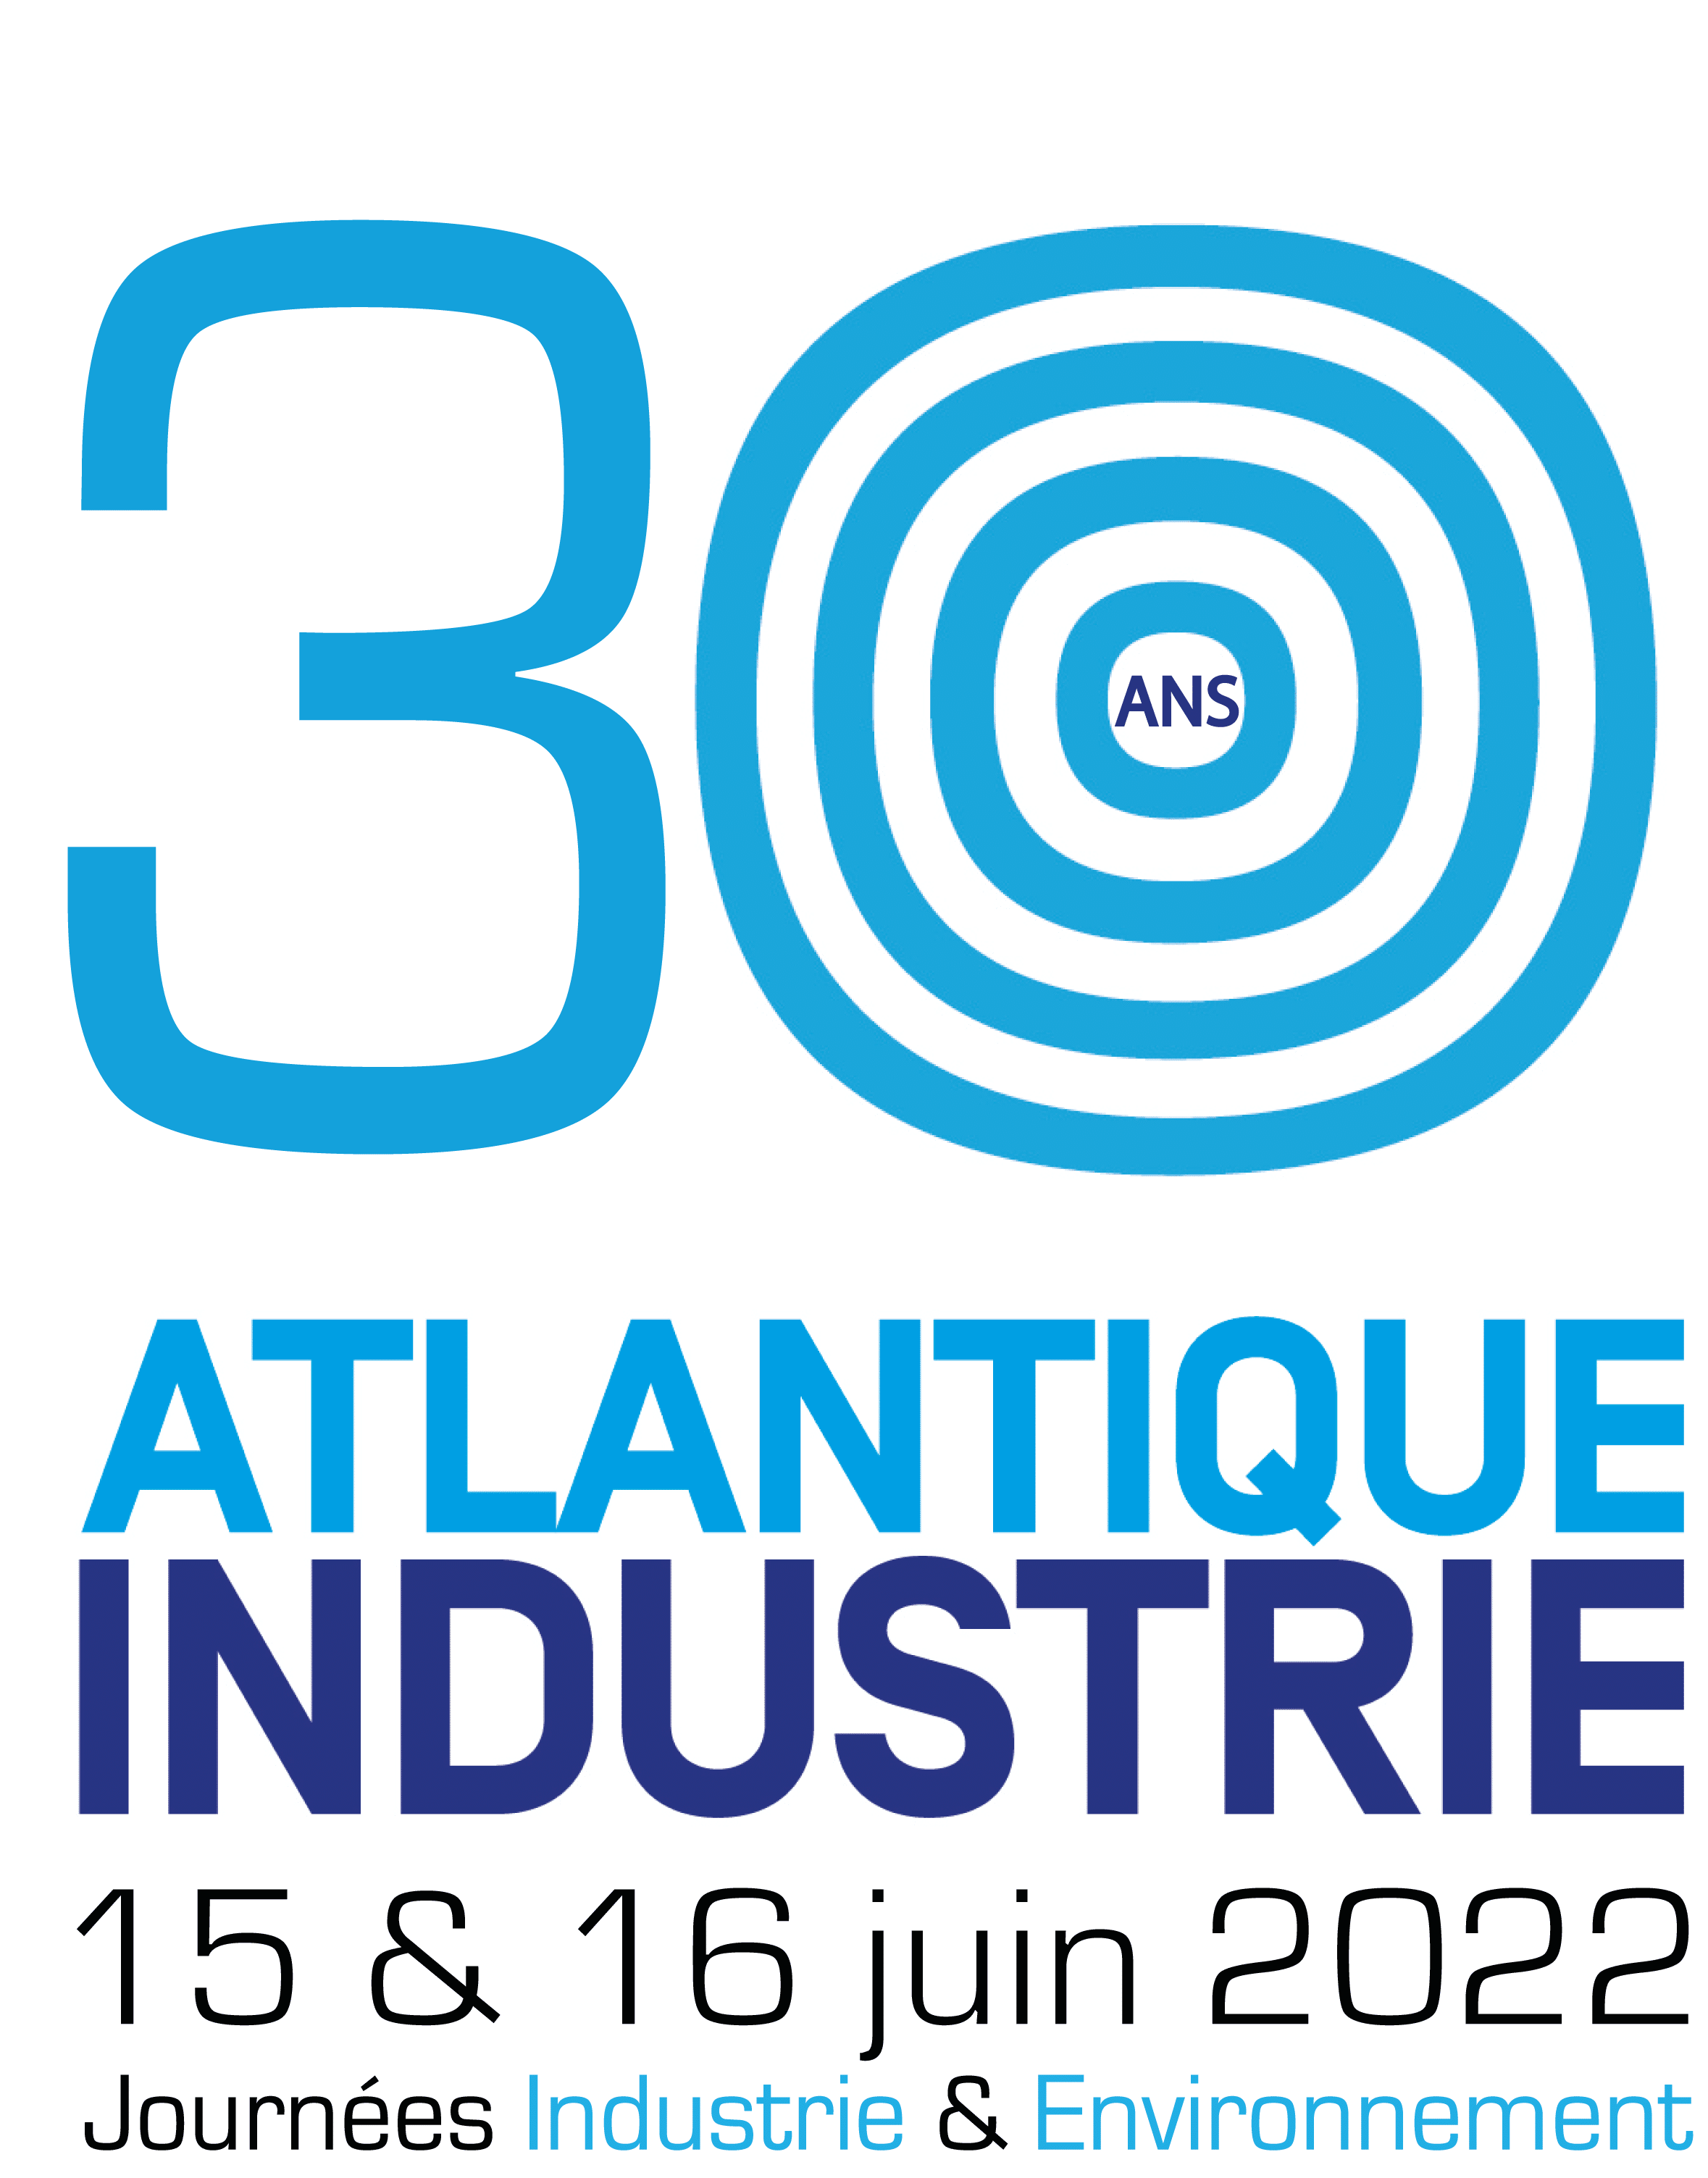 Les 15 et 16 juin, Atlantique Industrie fait son événement !